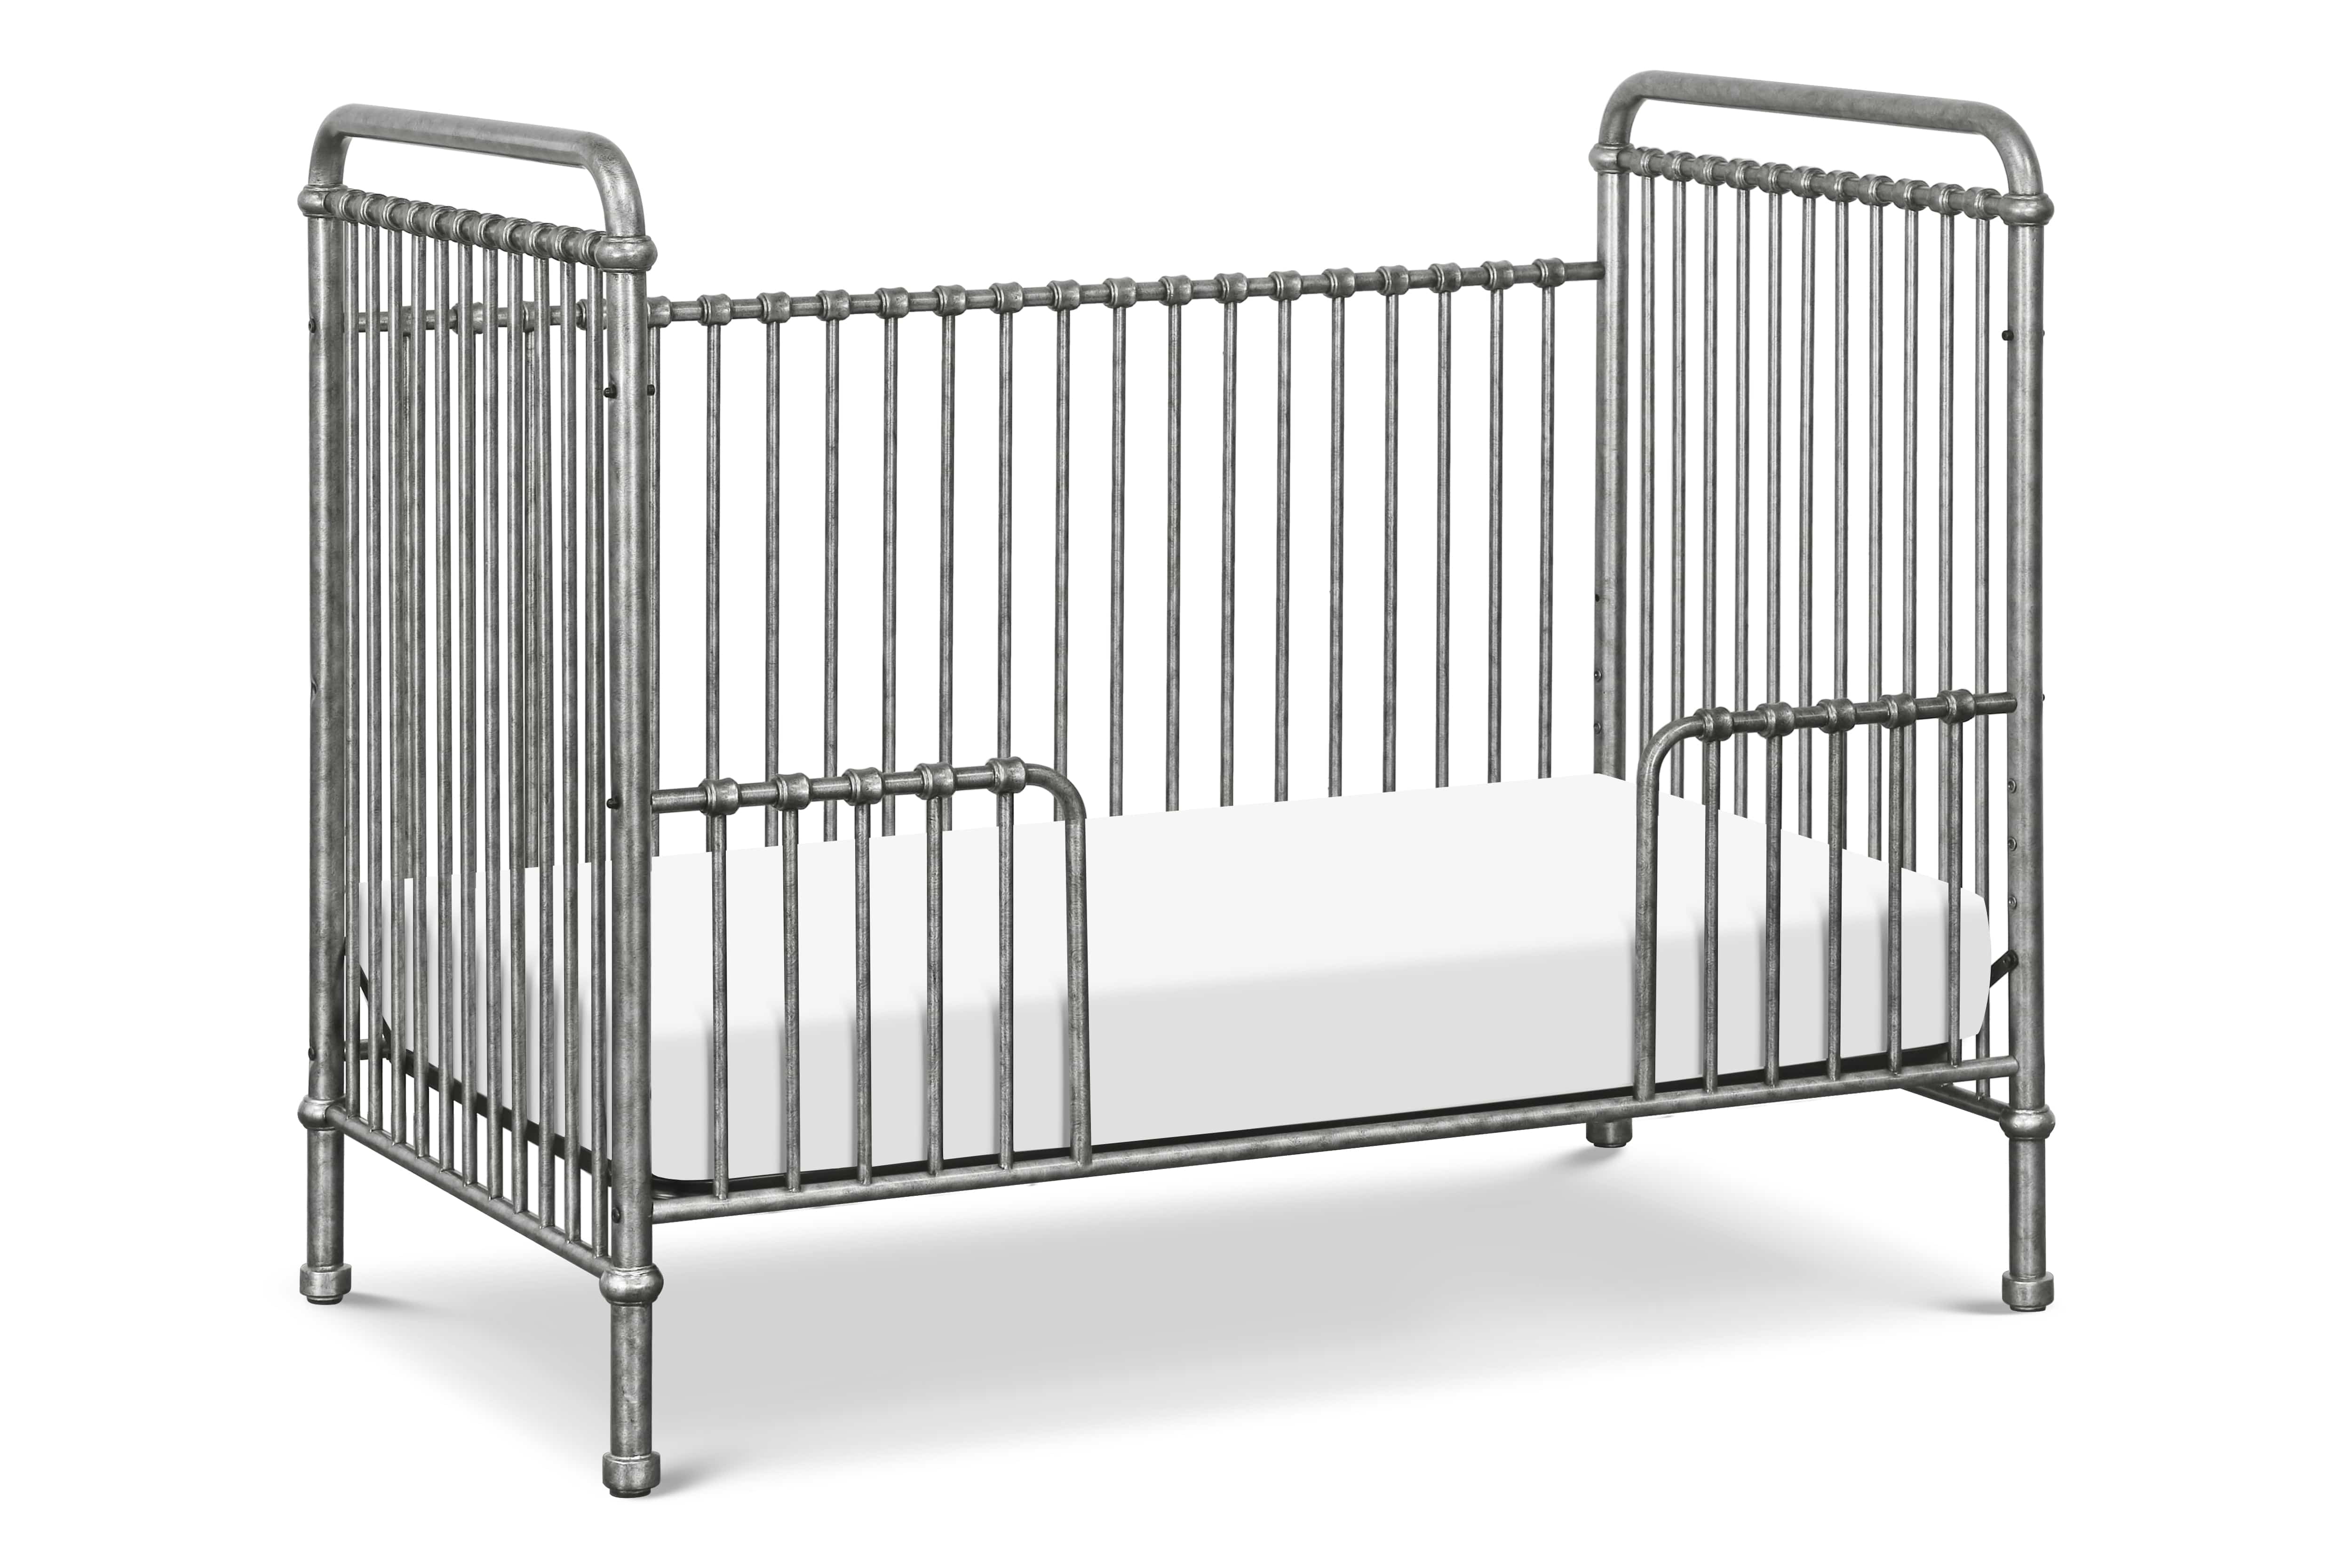 Abigail 3-1 Crib in Vintage Silver - Twinkle Twinkle Little One